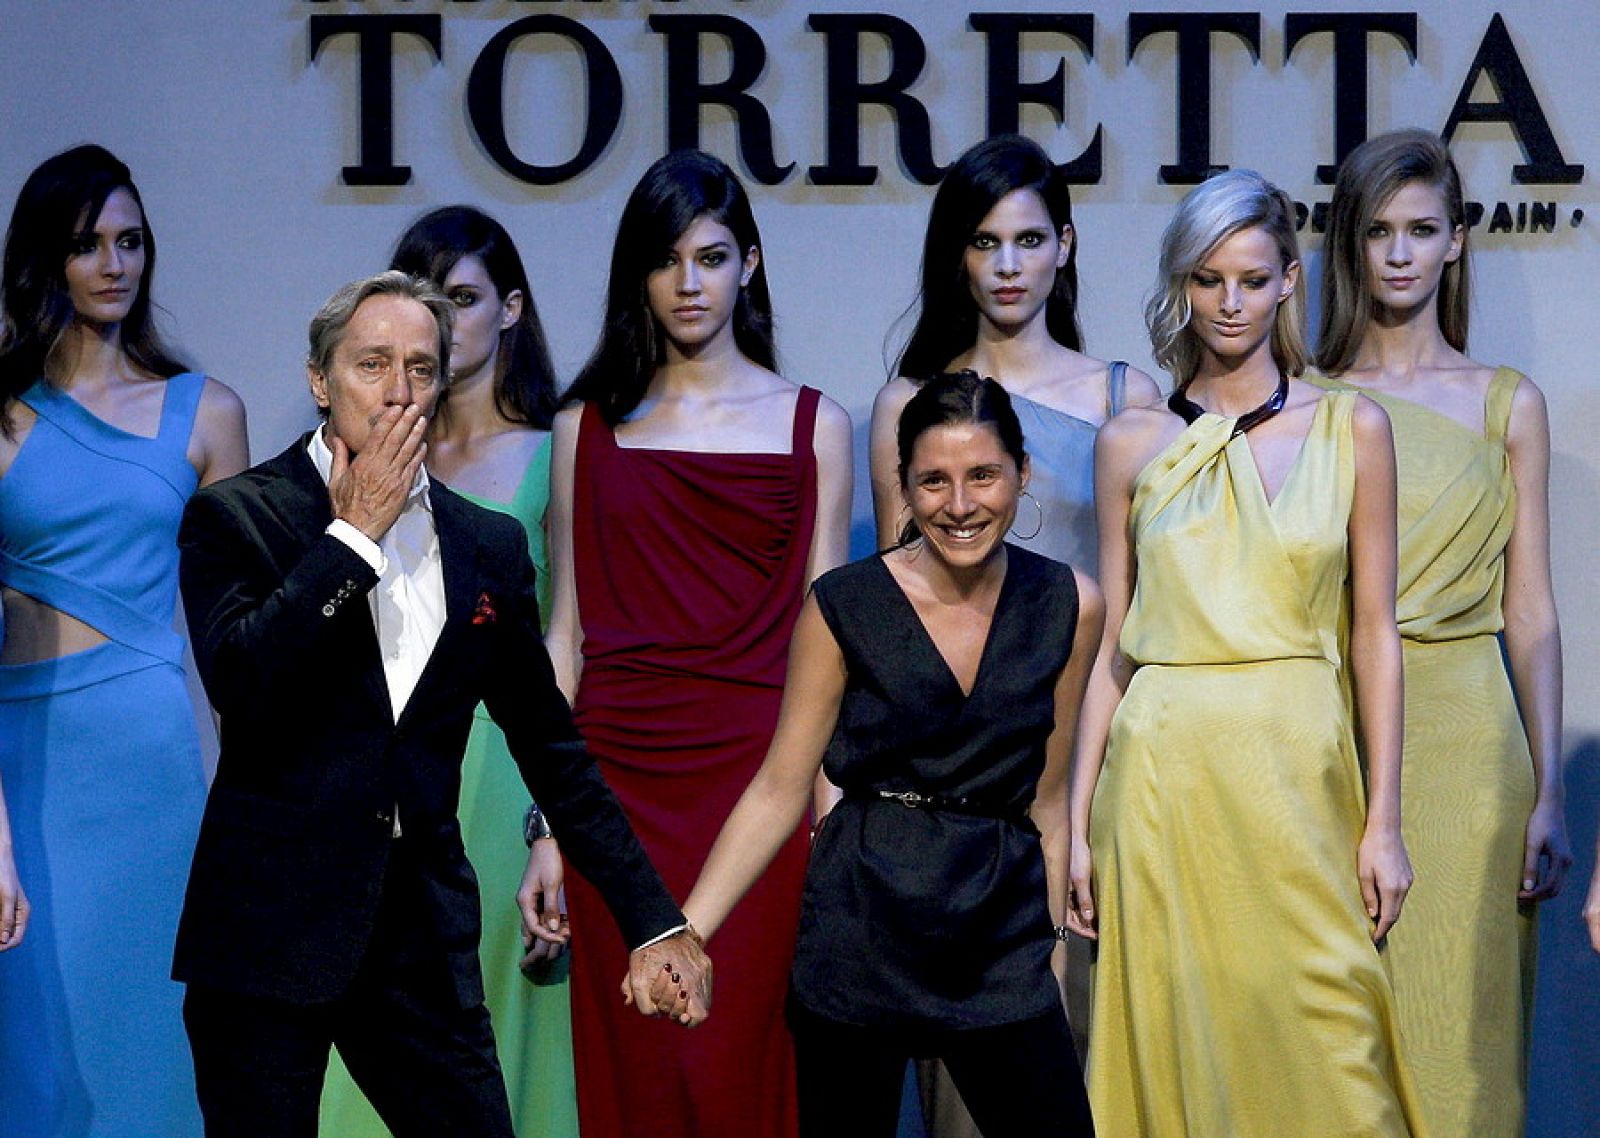 El diseñador Roberto Torretta, junto a sus modelos, saluda tras el desfile de sus propuestas para la primavera verano 2014